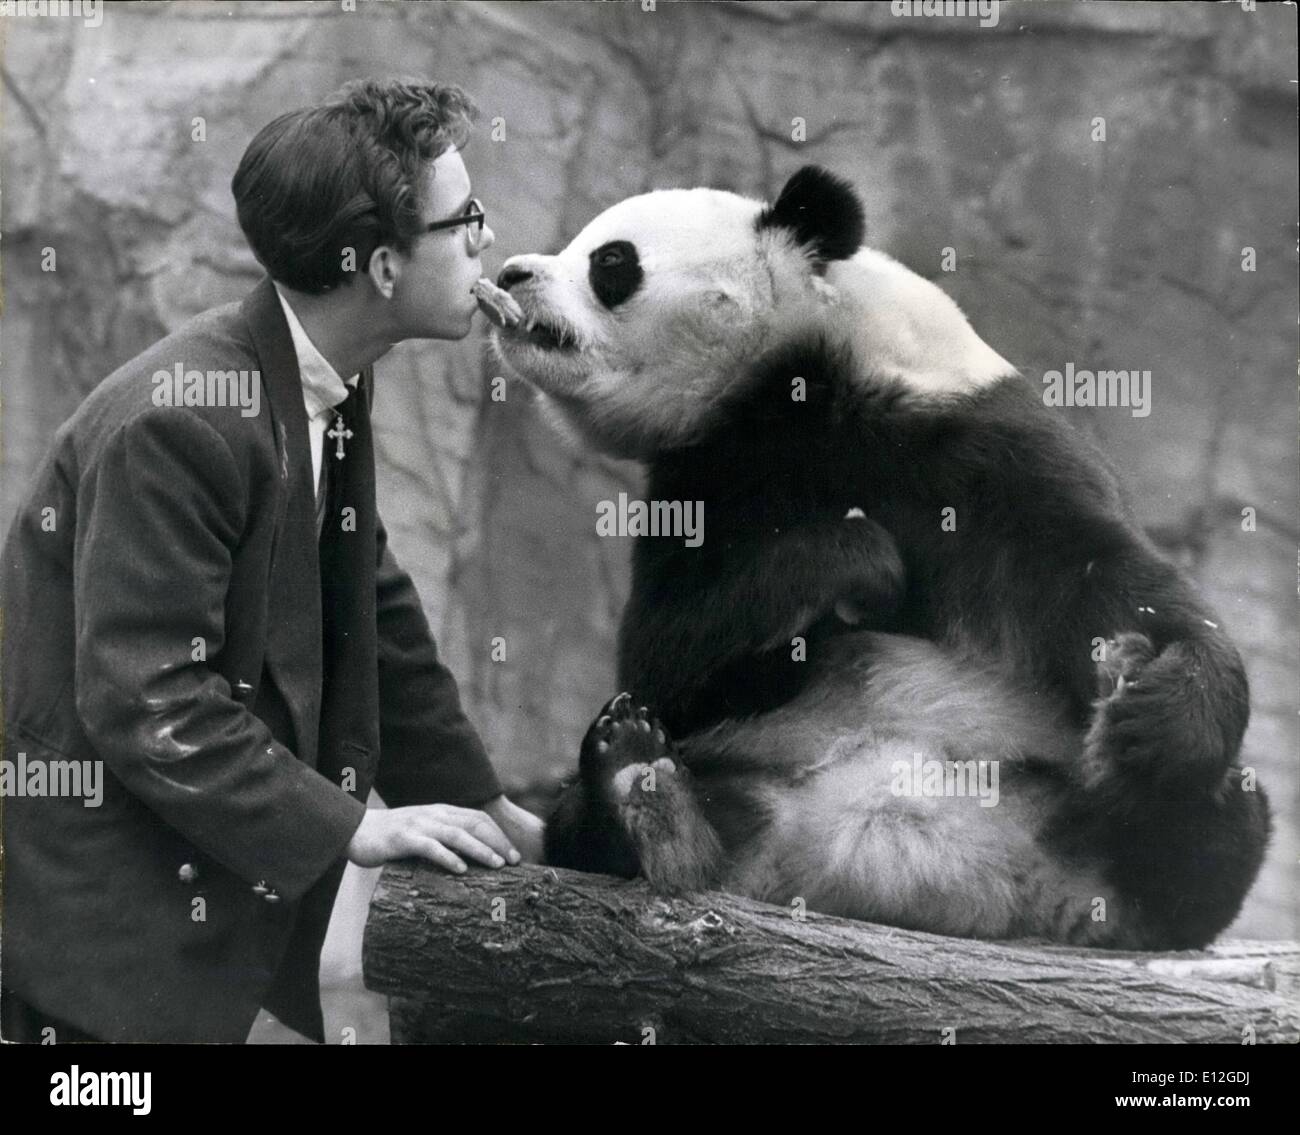 Enero 10, 2012 - Los guardianes tienen que jugar con Chi-Chi el Panda para  detener él solo. Chi-Chi el panda gigante en el Zoo de Londres a veces  puede ser bastante incómodo